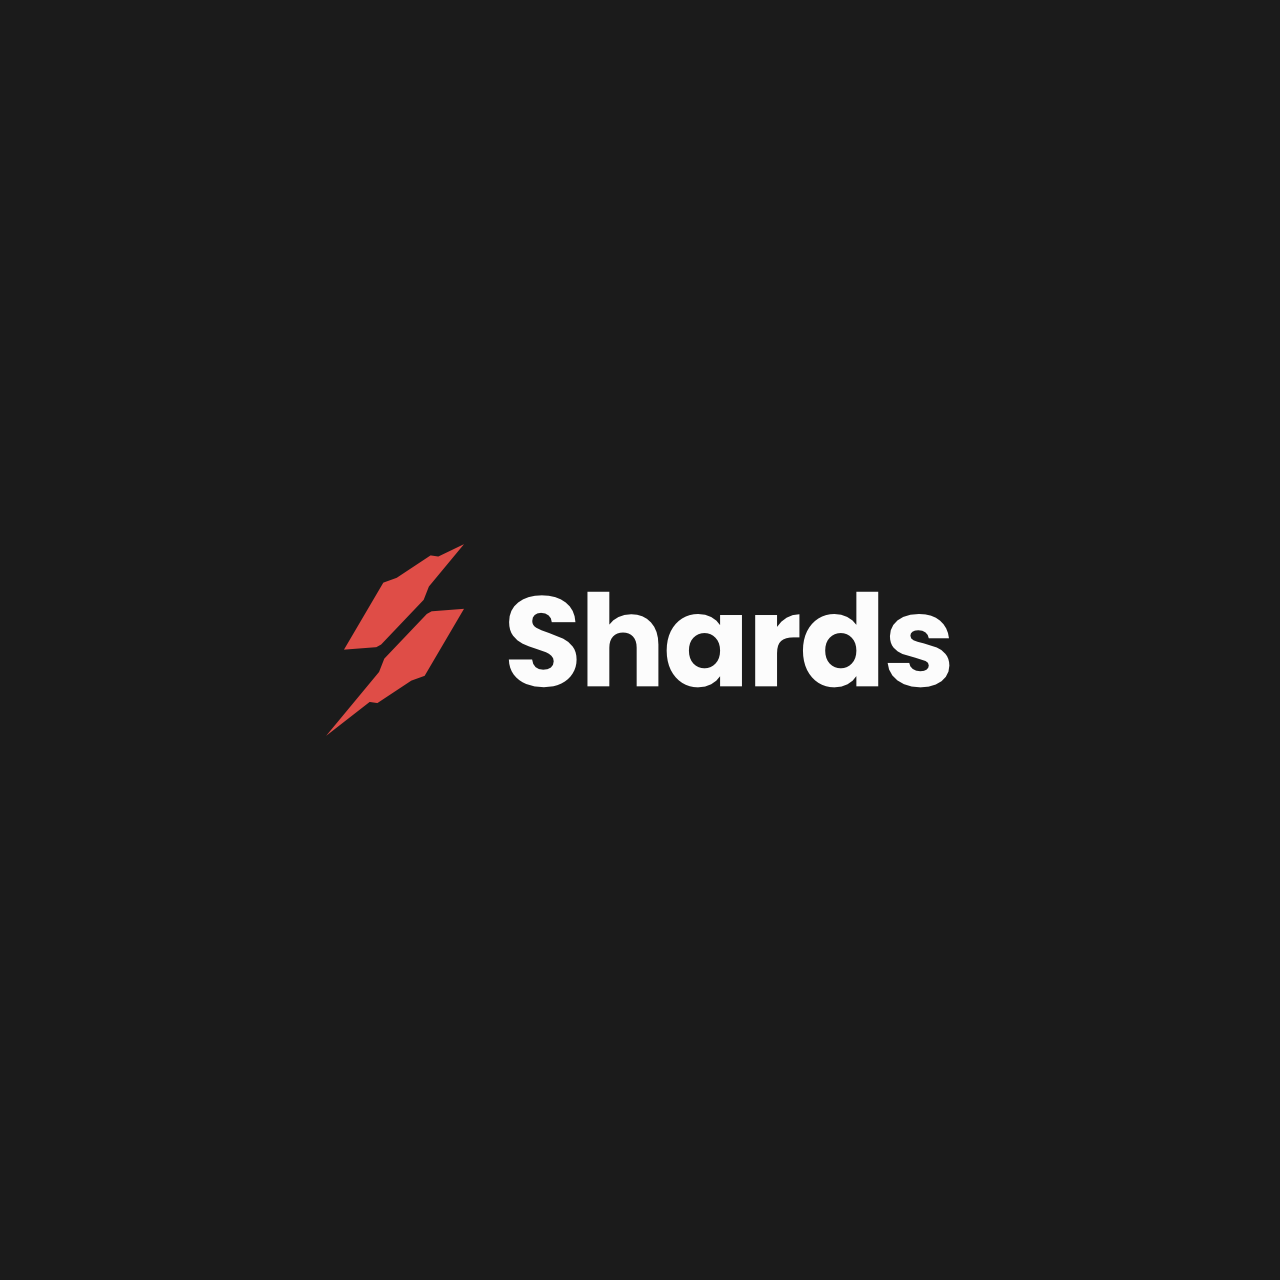 shards